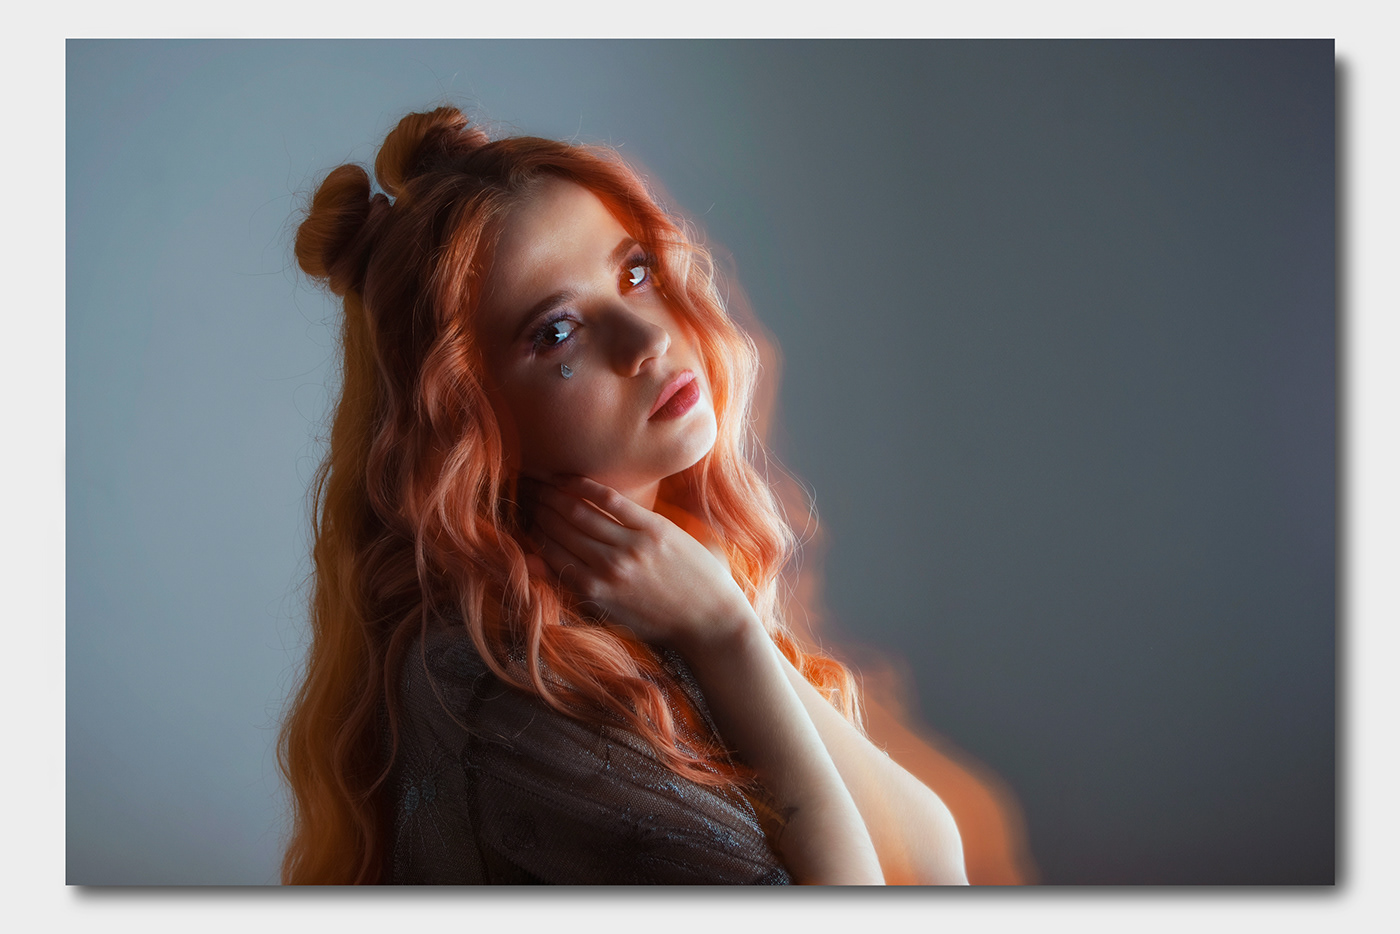 Female portrait female double exposure light flare warm vibrant colorful color grading portrait photography